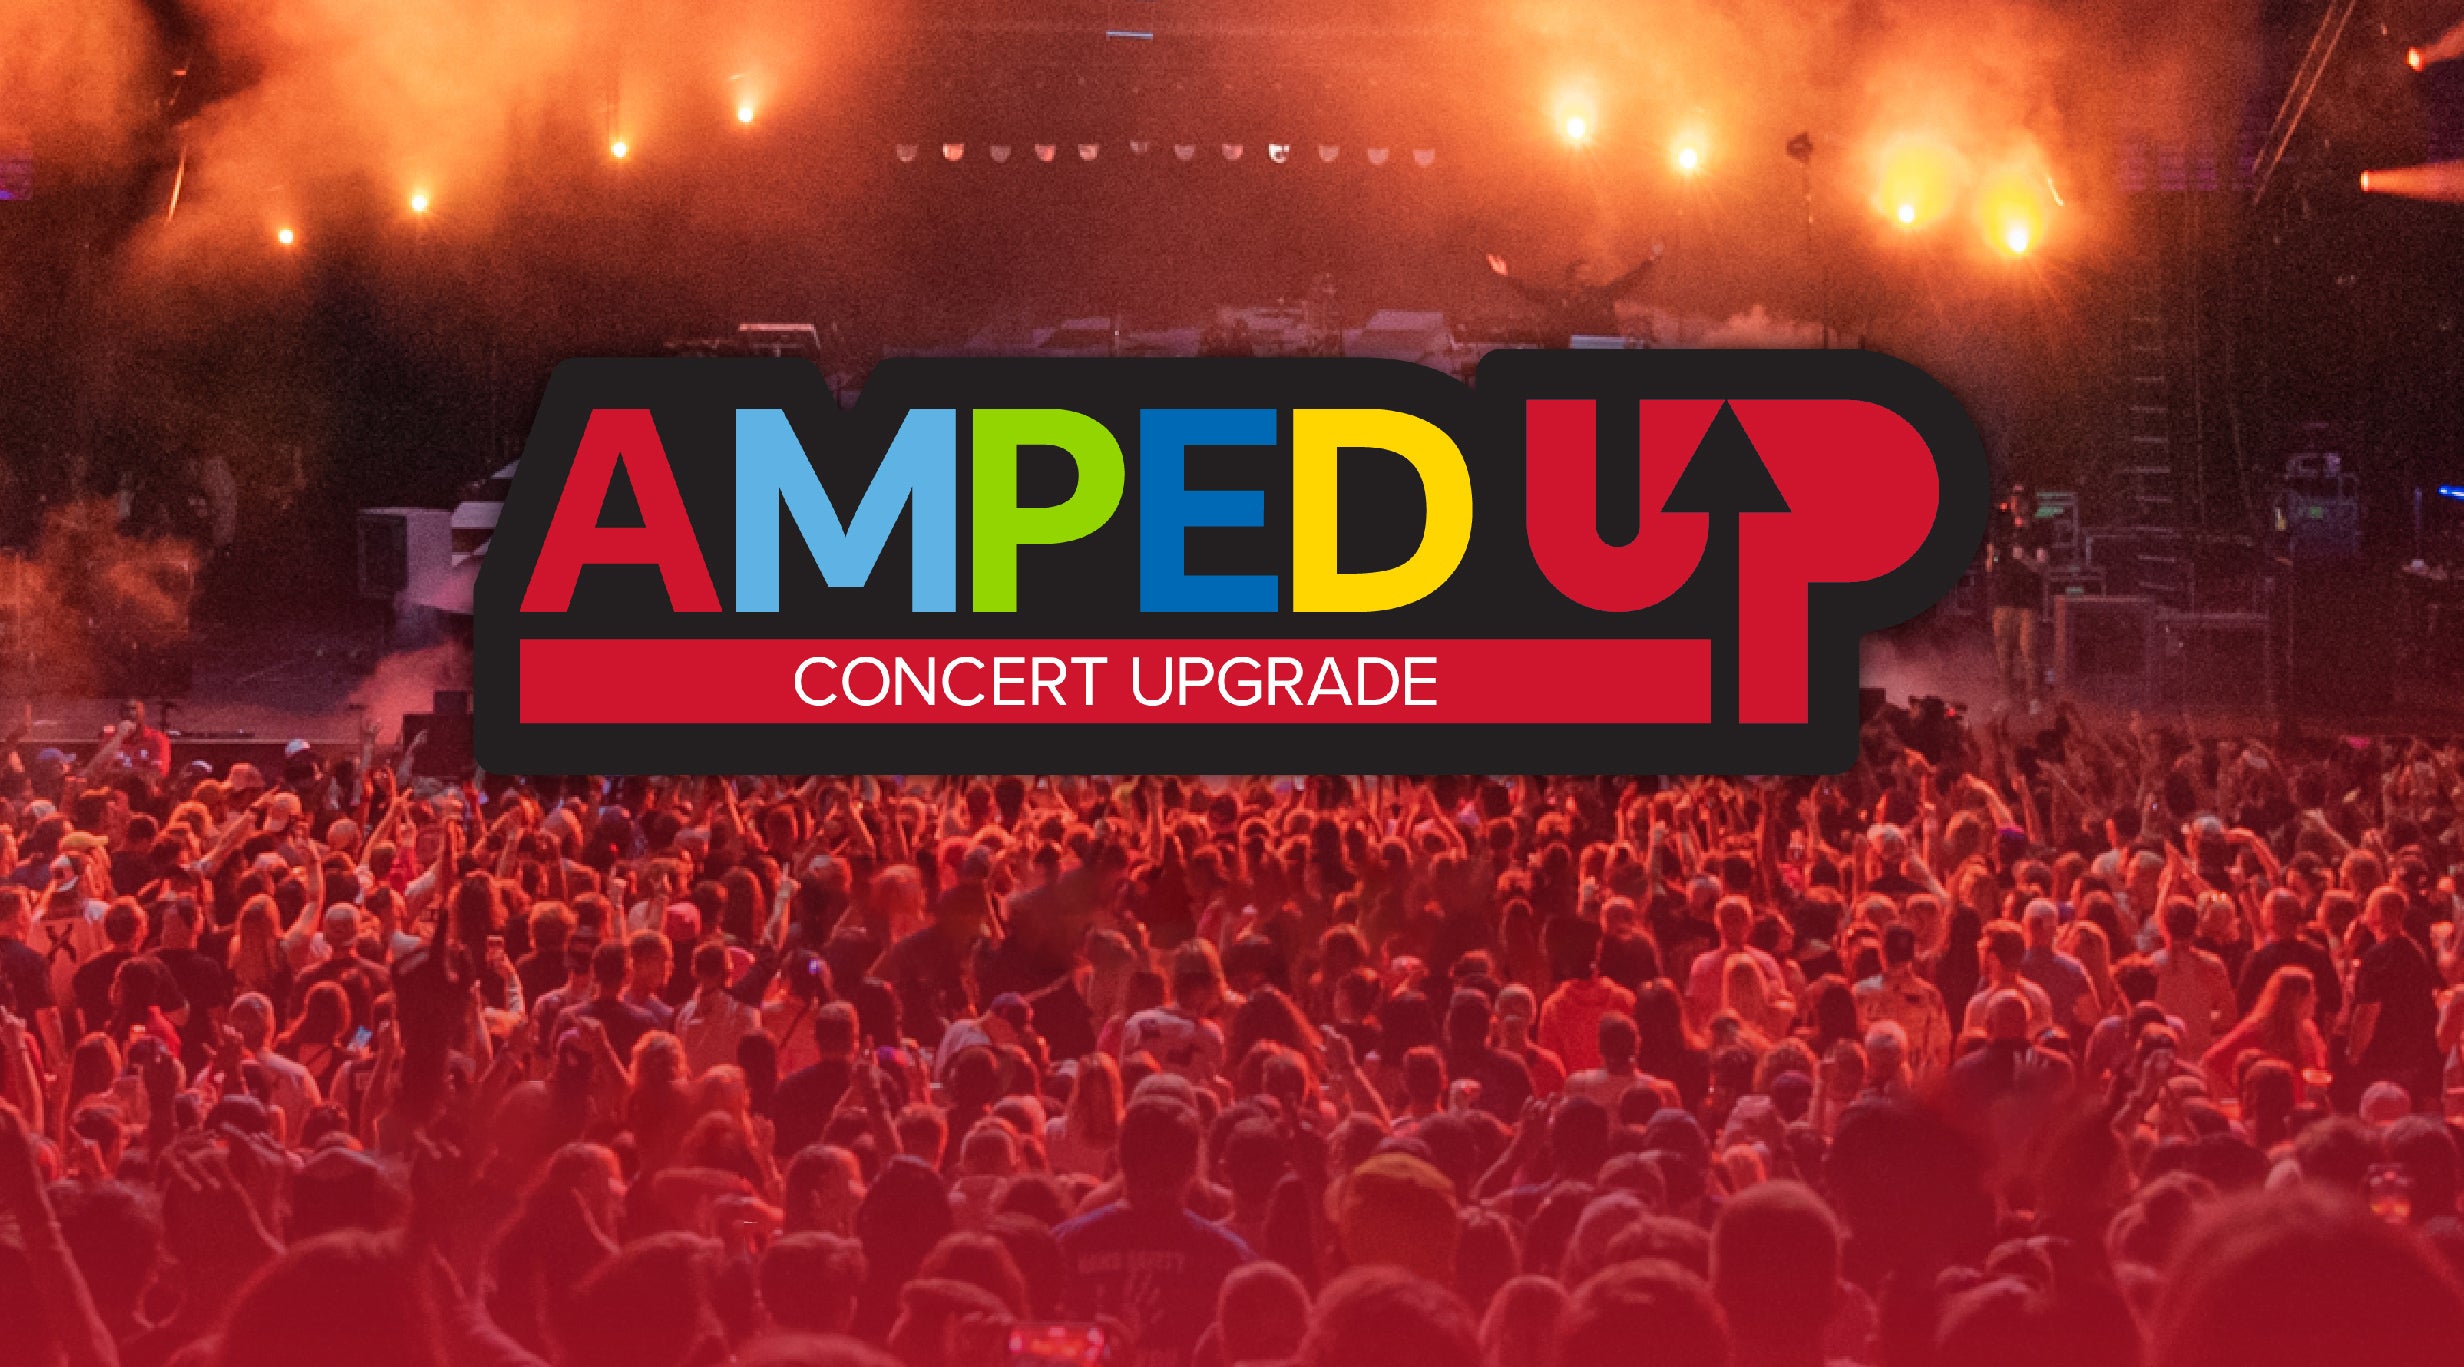 Summerfest Amped Up Concert Upgrade presale information on freepresalepasswords.com